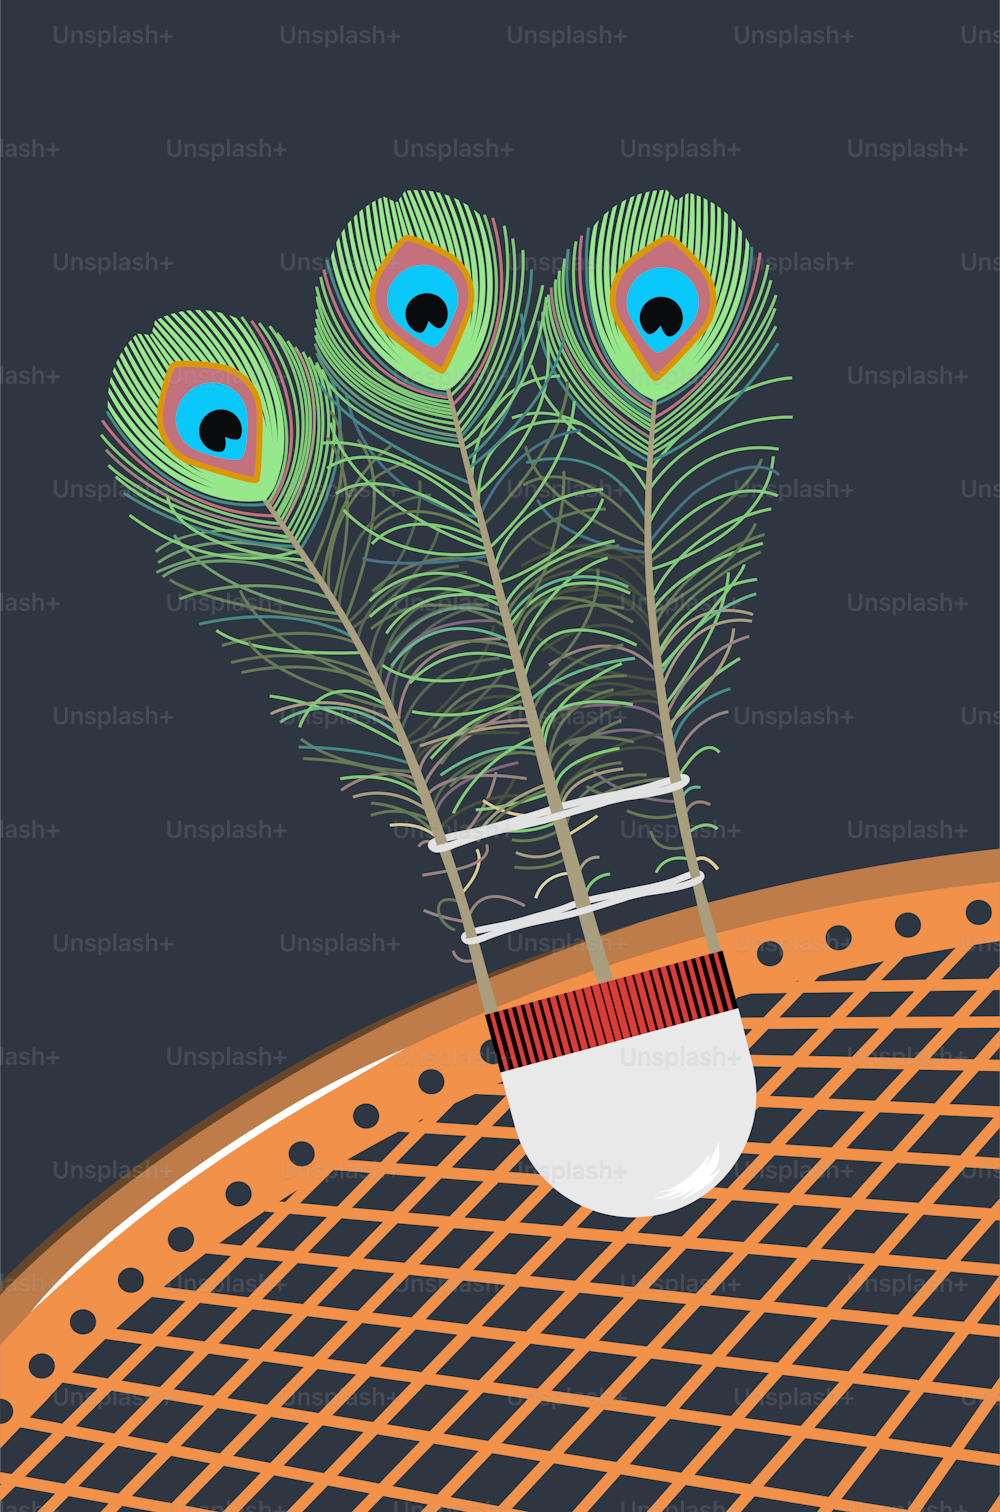 Volano metaforico da badminton con piume di pavone su sfondo blu scuro e battledore